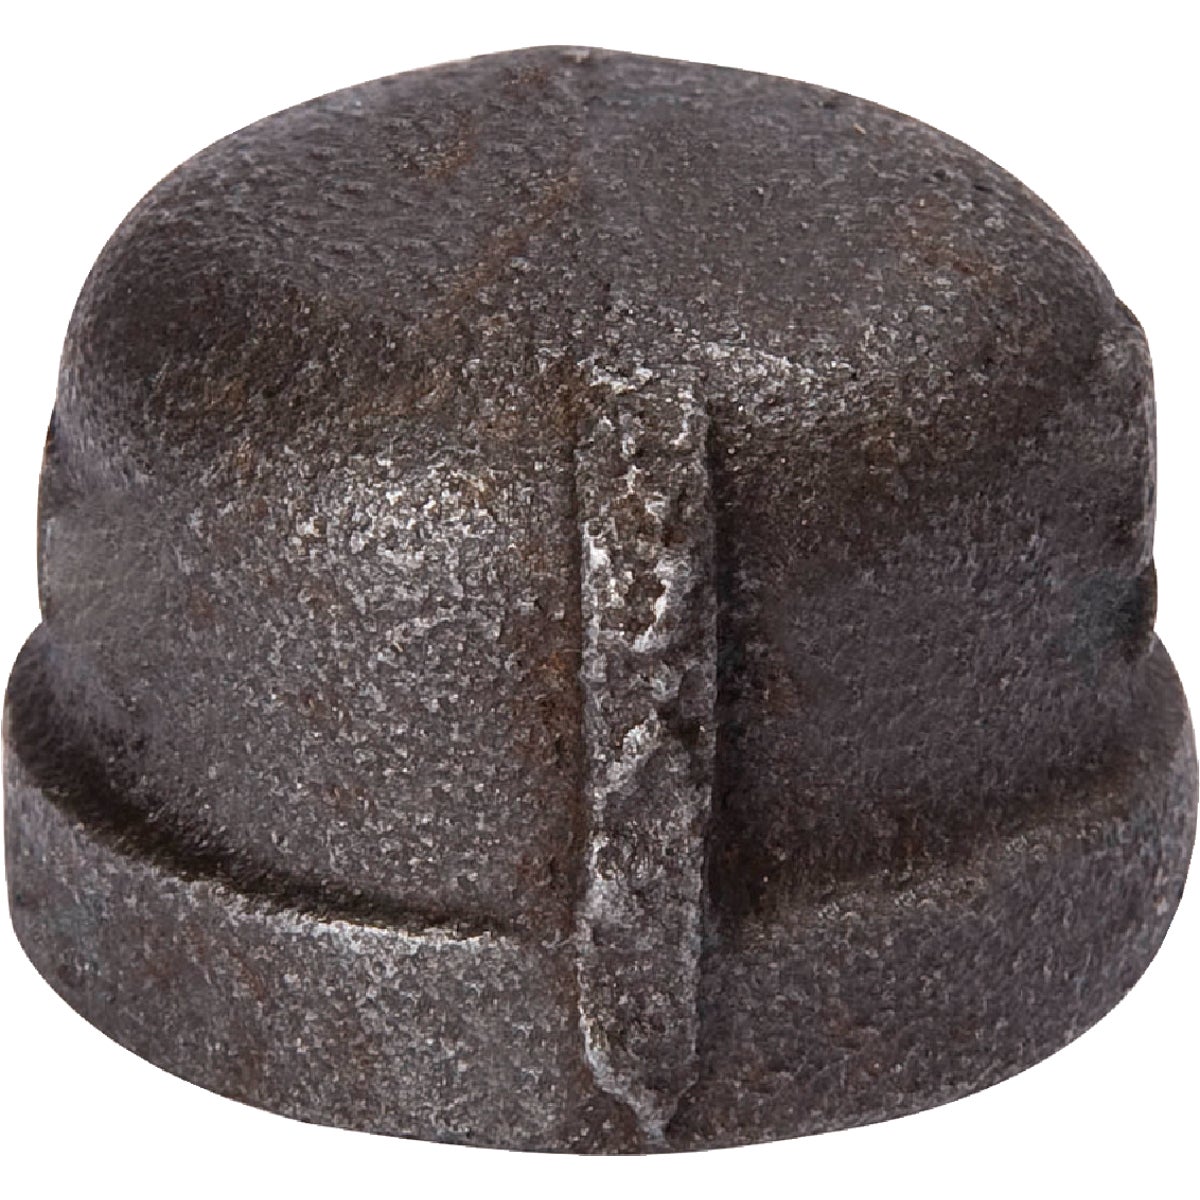 B&K 1/2 In. Malleable Black Iron Cap